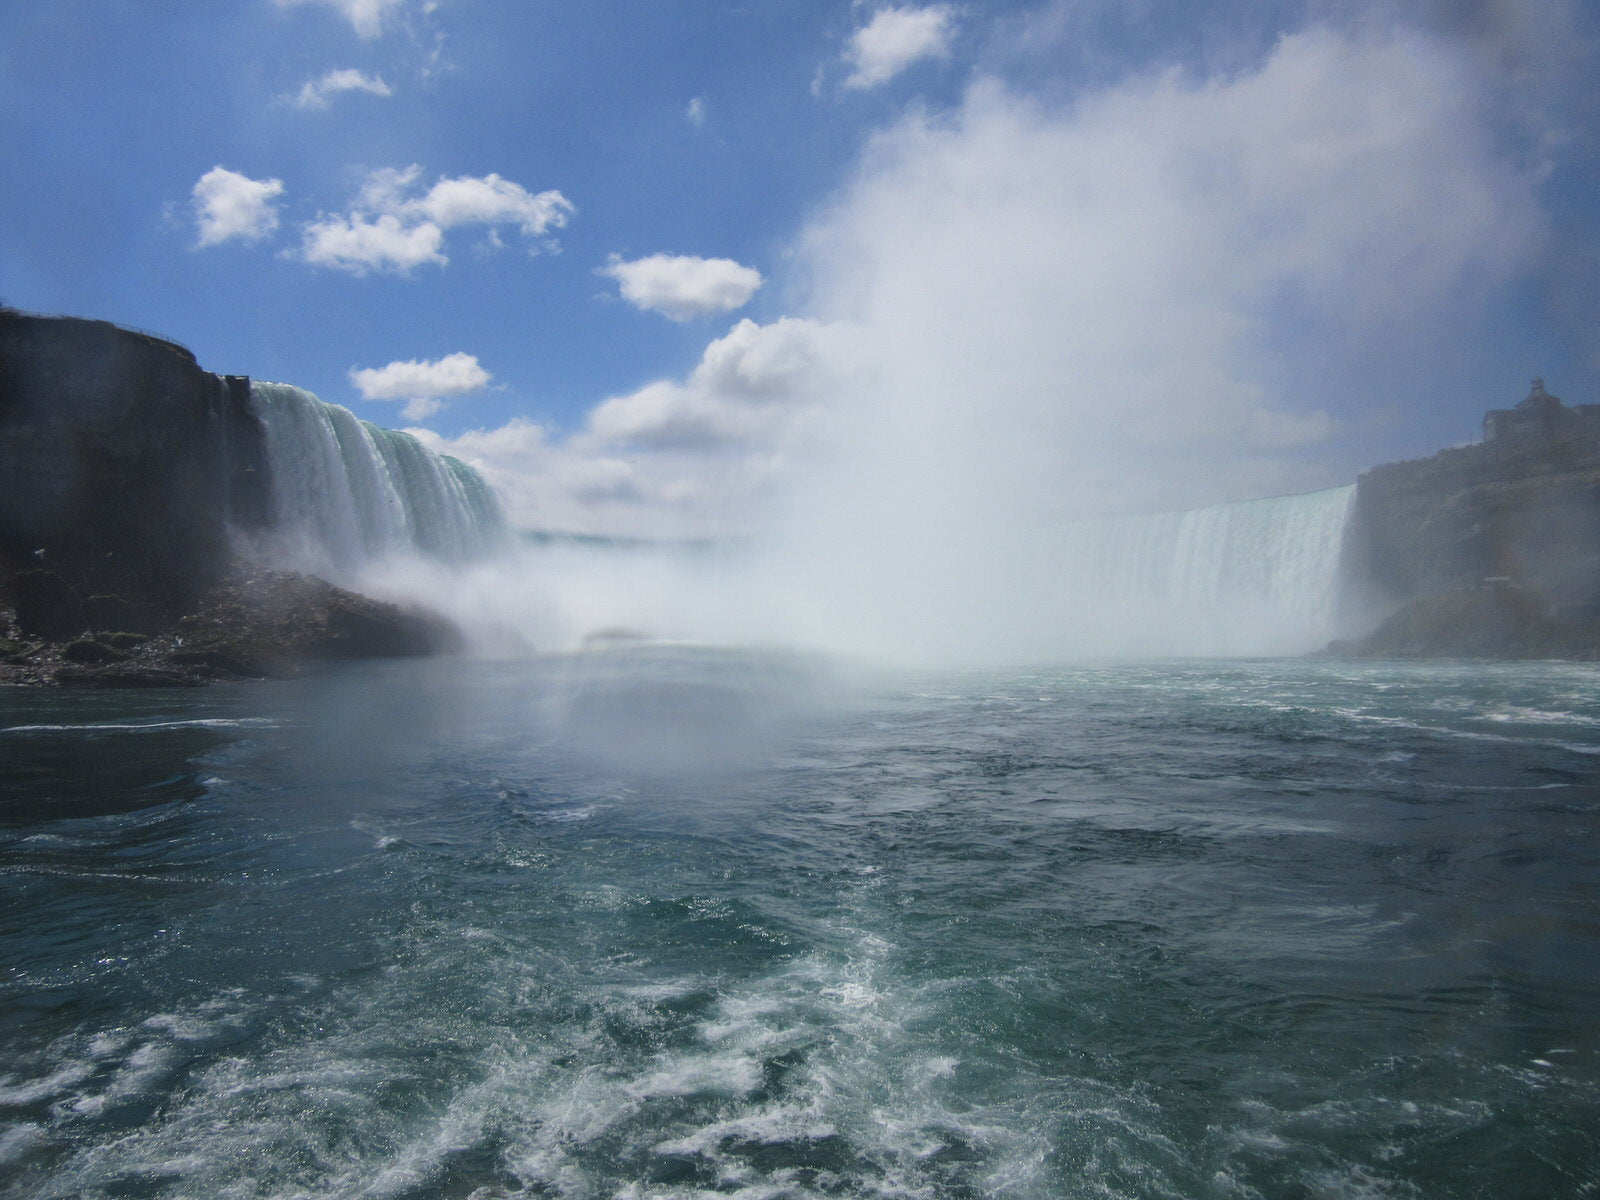 Toronto-day-trip-Niagara-Falls-view-of-Horseshoe-Falls-from-boat